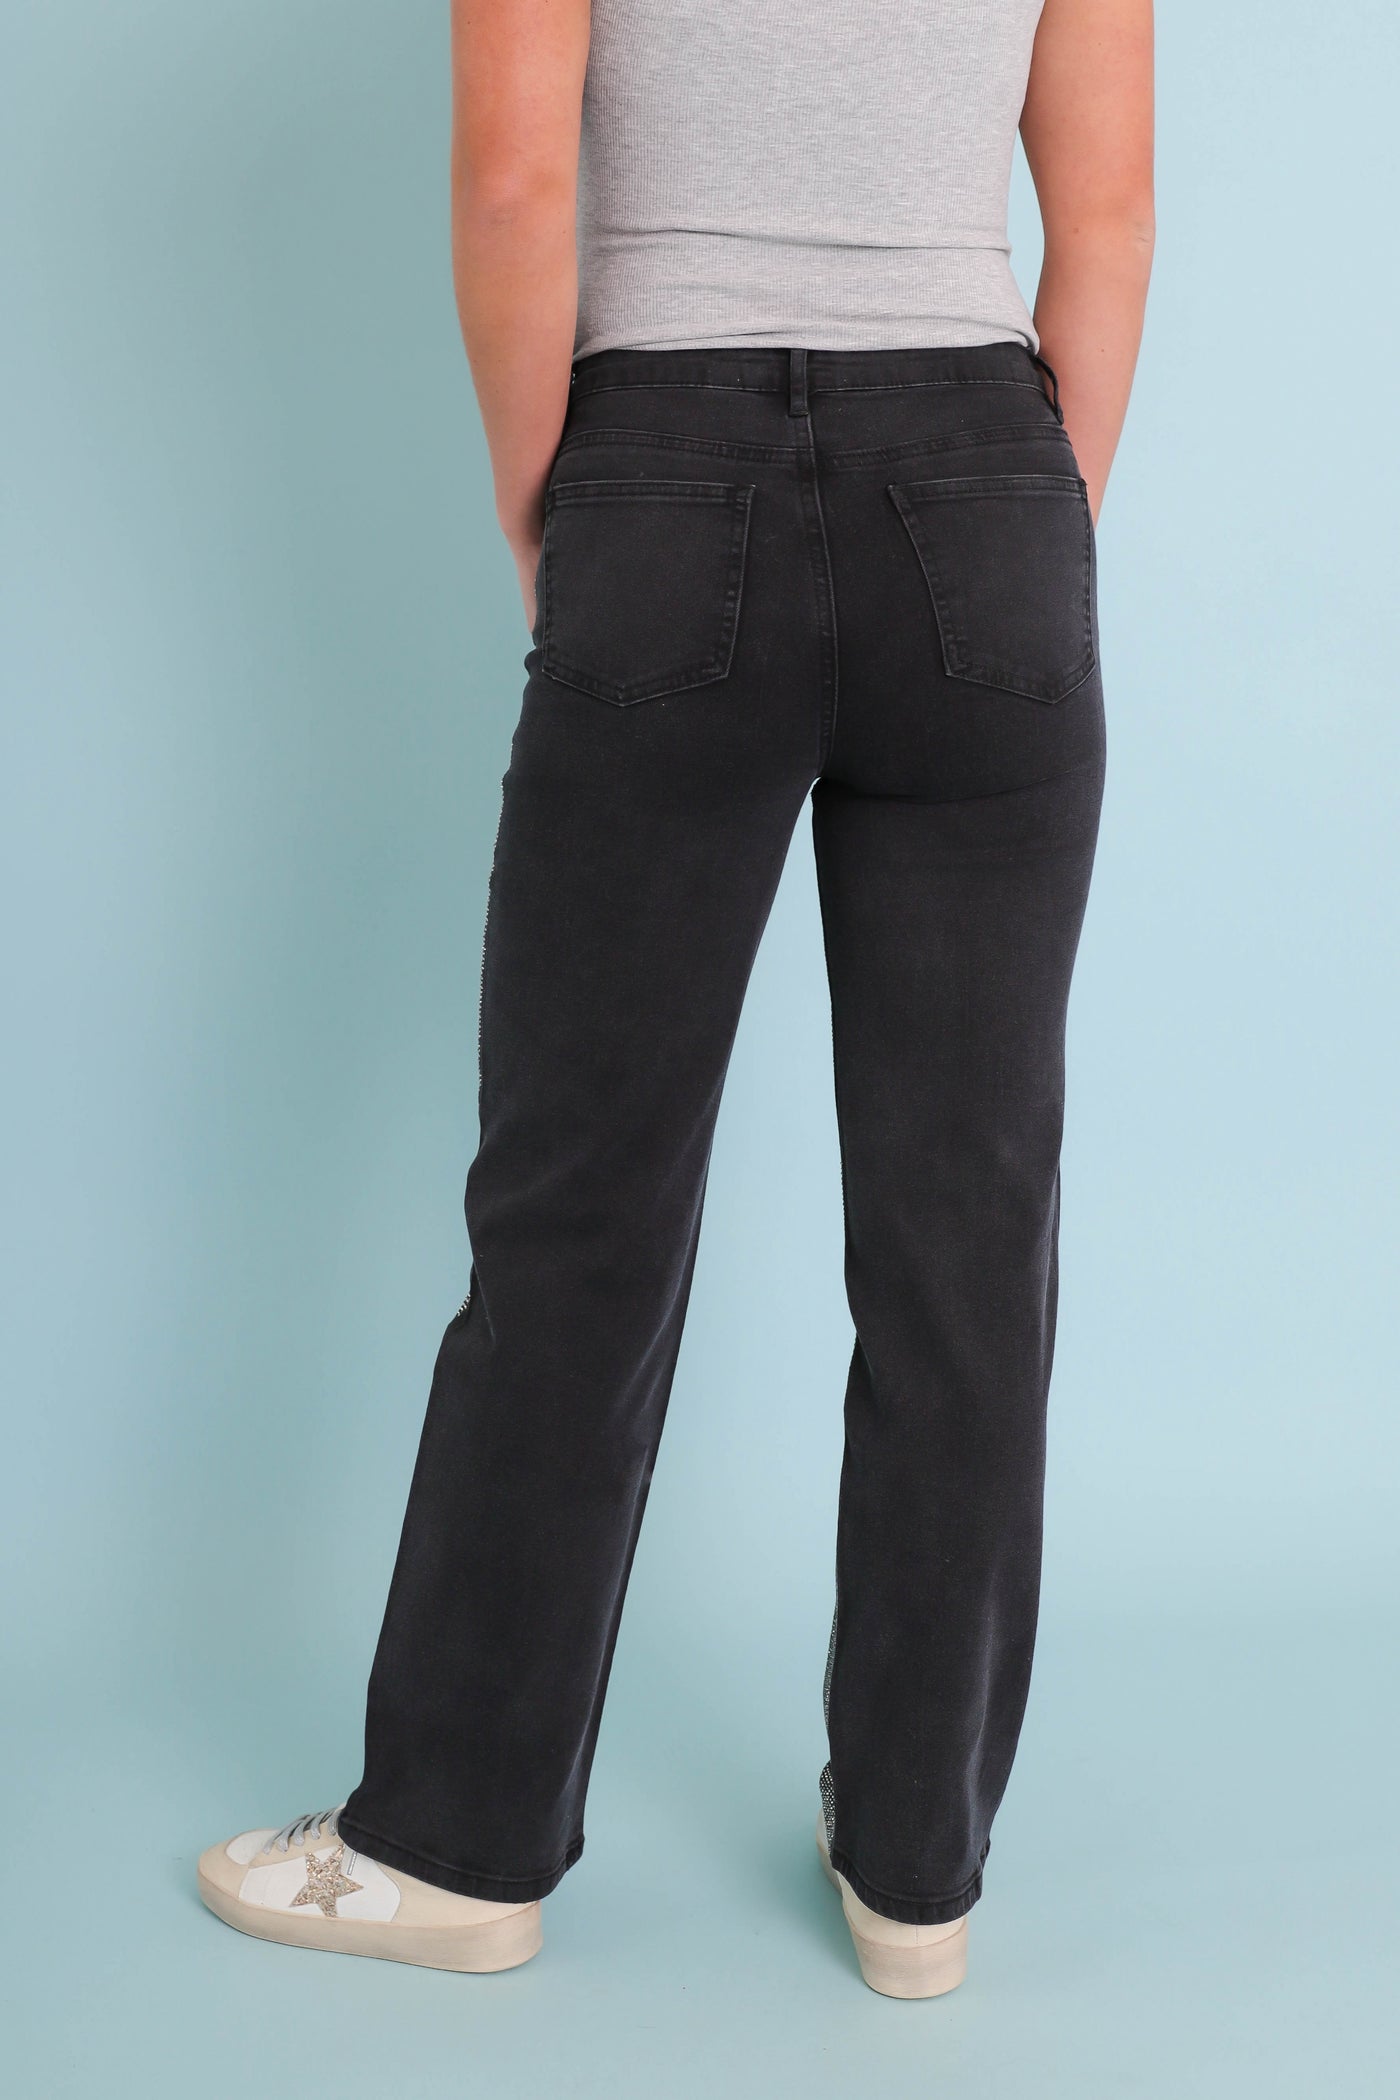 Black Rhinestone Jeans- Women's Sequin Jeans- BlueB Jeans